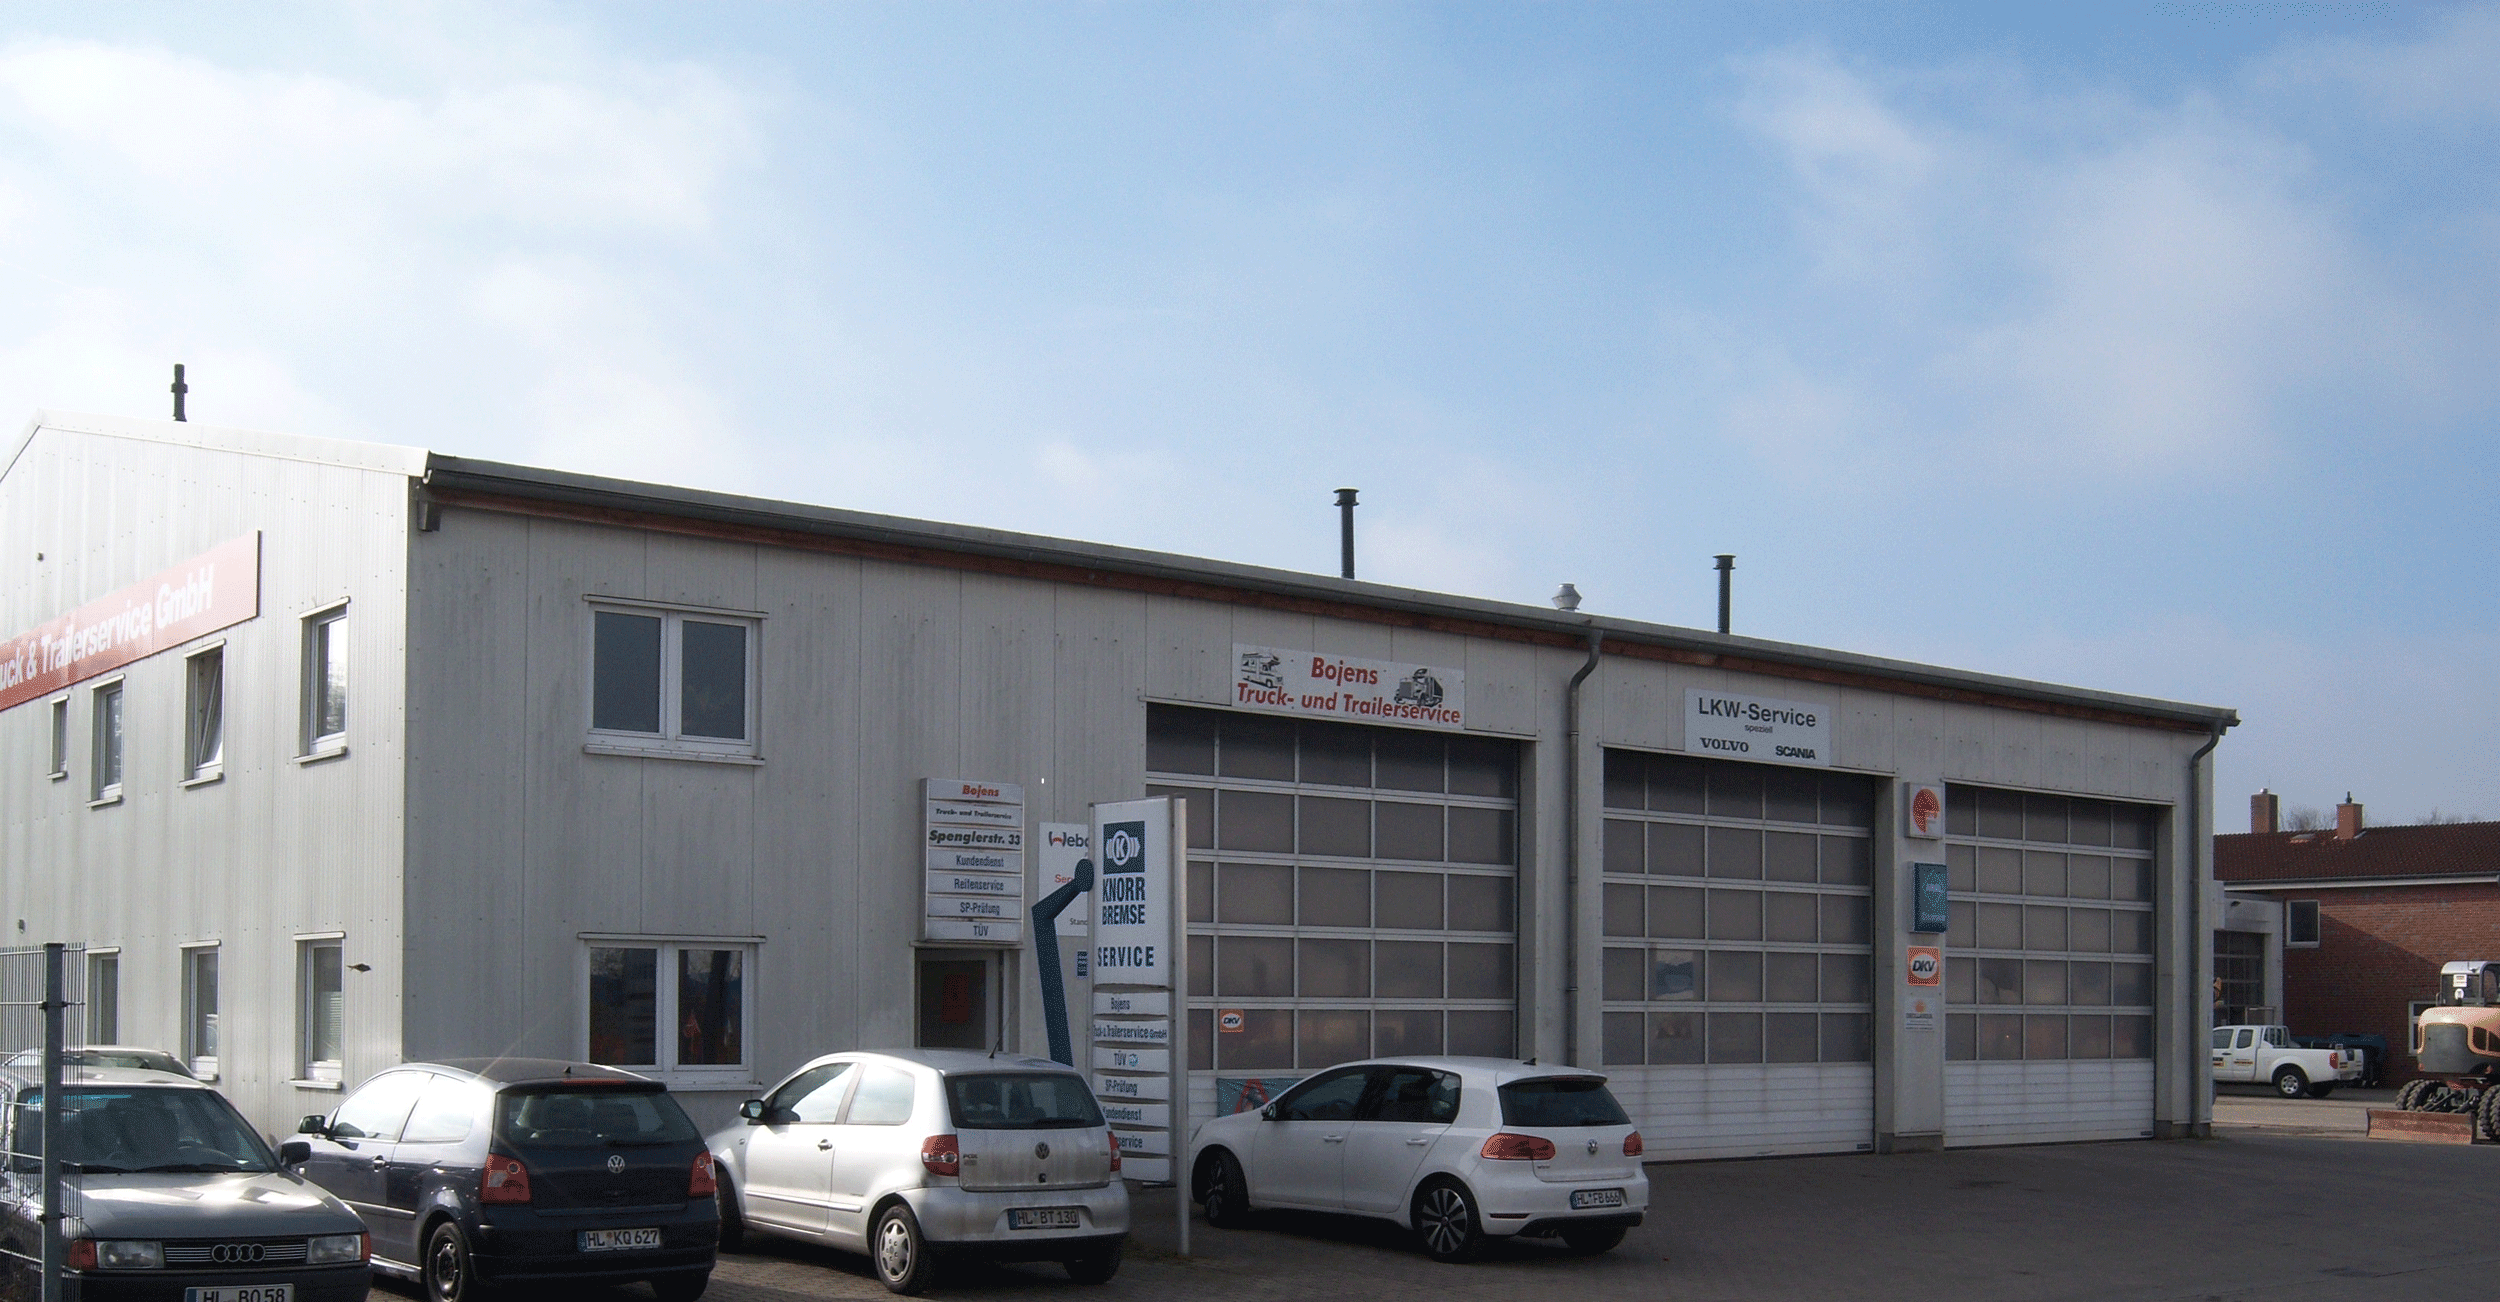 Unsere an der Autobahn gelegene LKW-Werkstatt in Lübeck/Roggenhorst genießt seit über 20 Jahren das Vertrauen der Kunden, die nicht nur aus Deutschland sondern aus ganz Europa kommen.